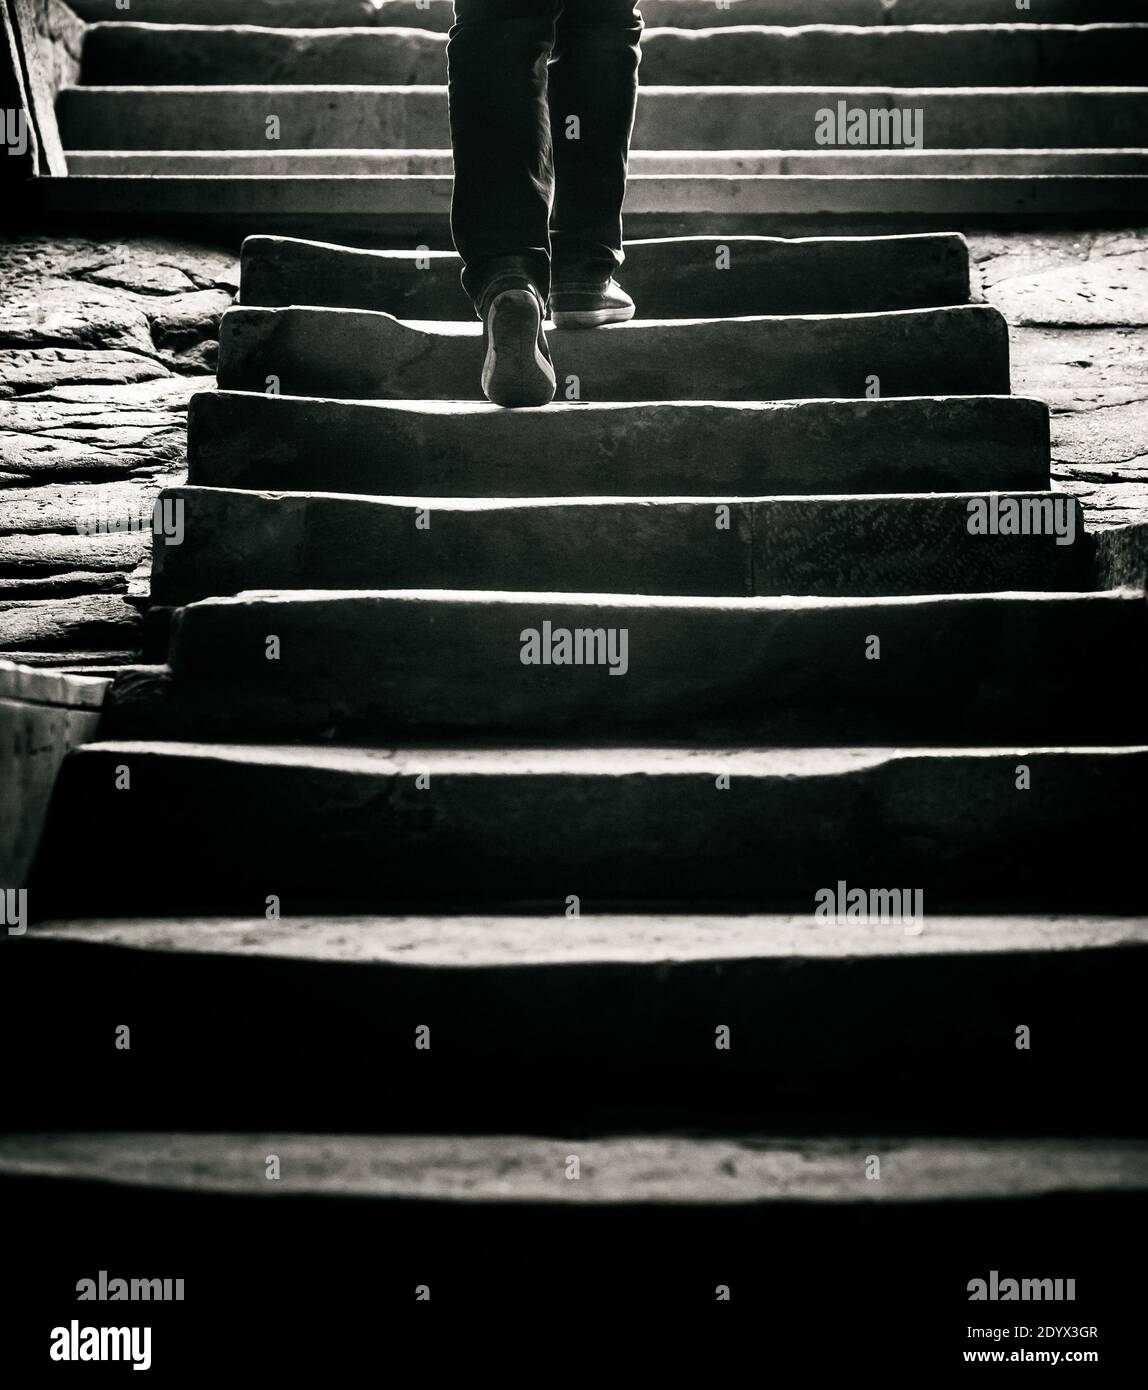 concetto: una persona sta andando via dalle scale all'esterno, immagine in toni monocromatici Foto Stock